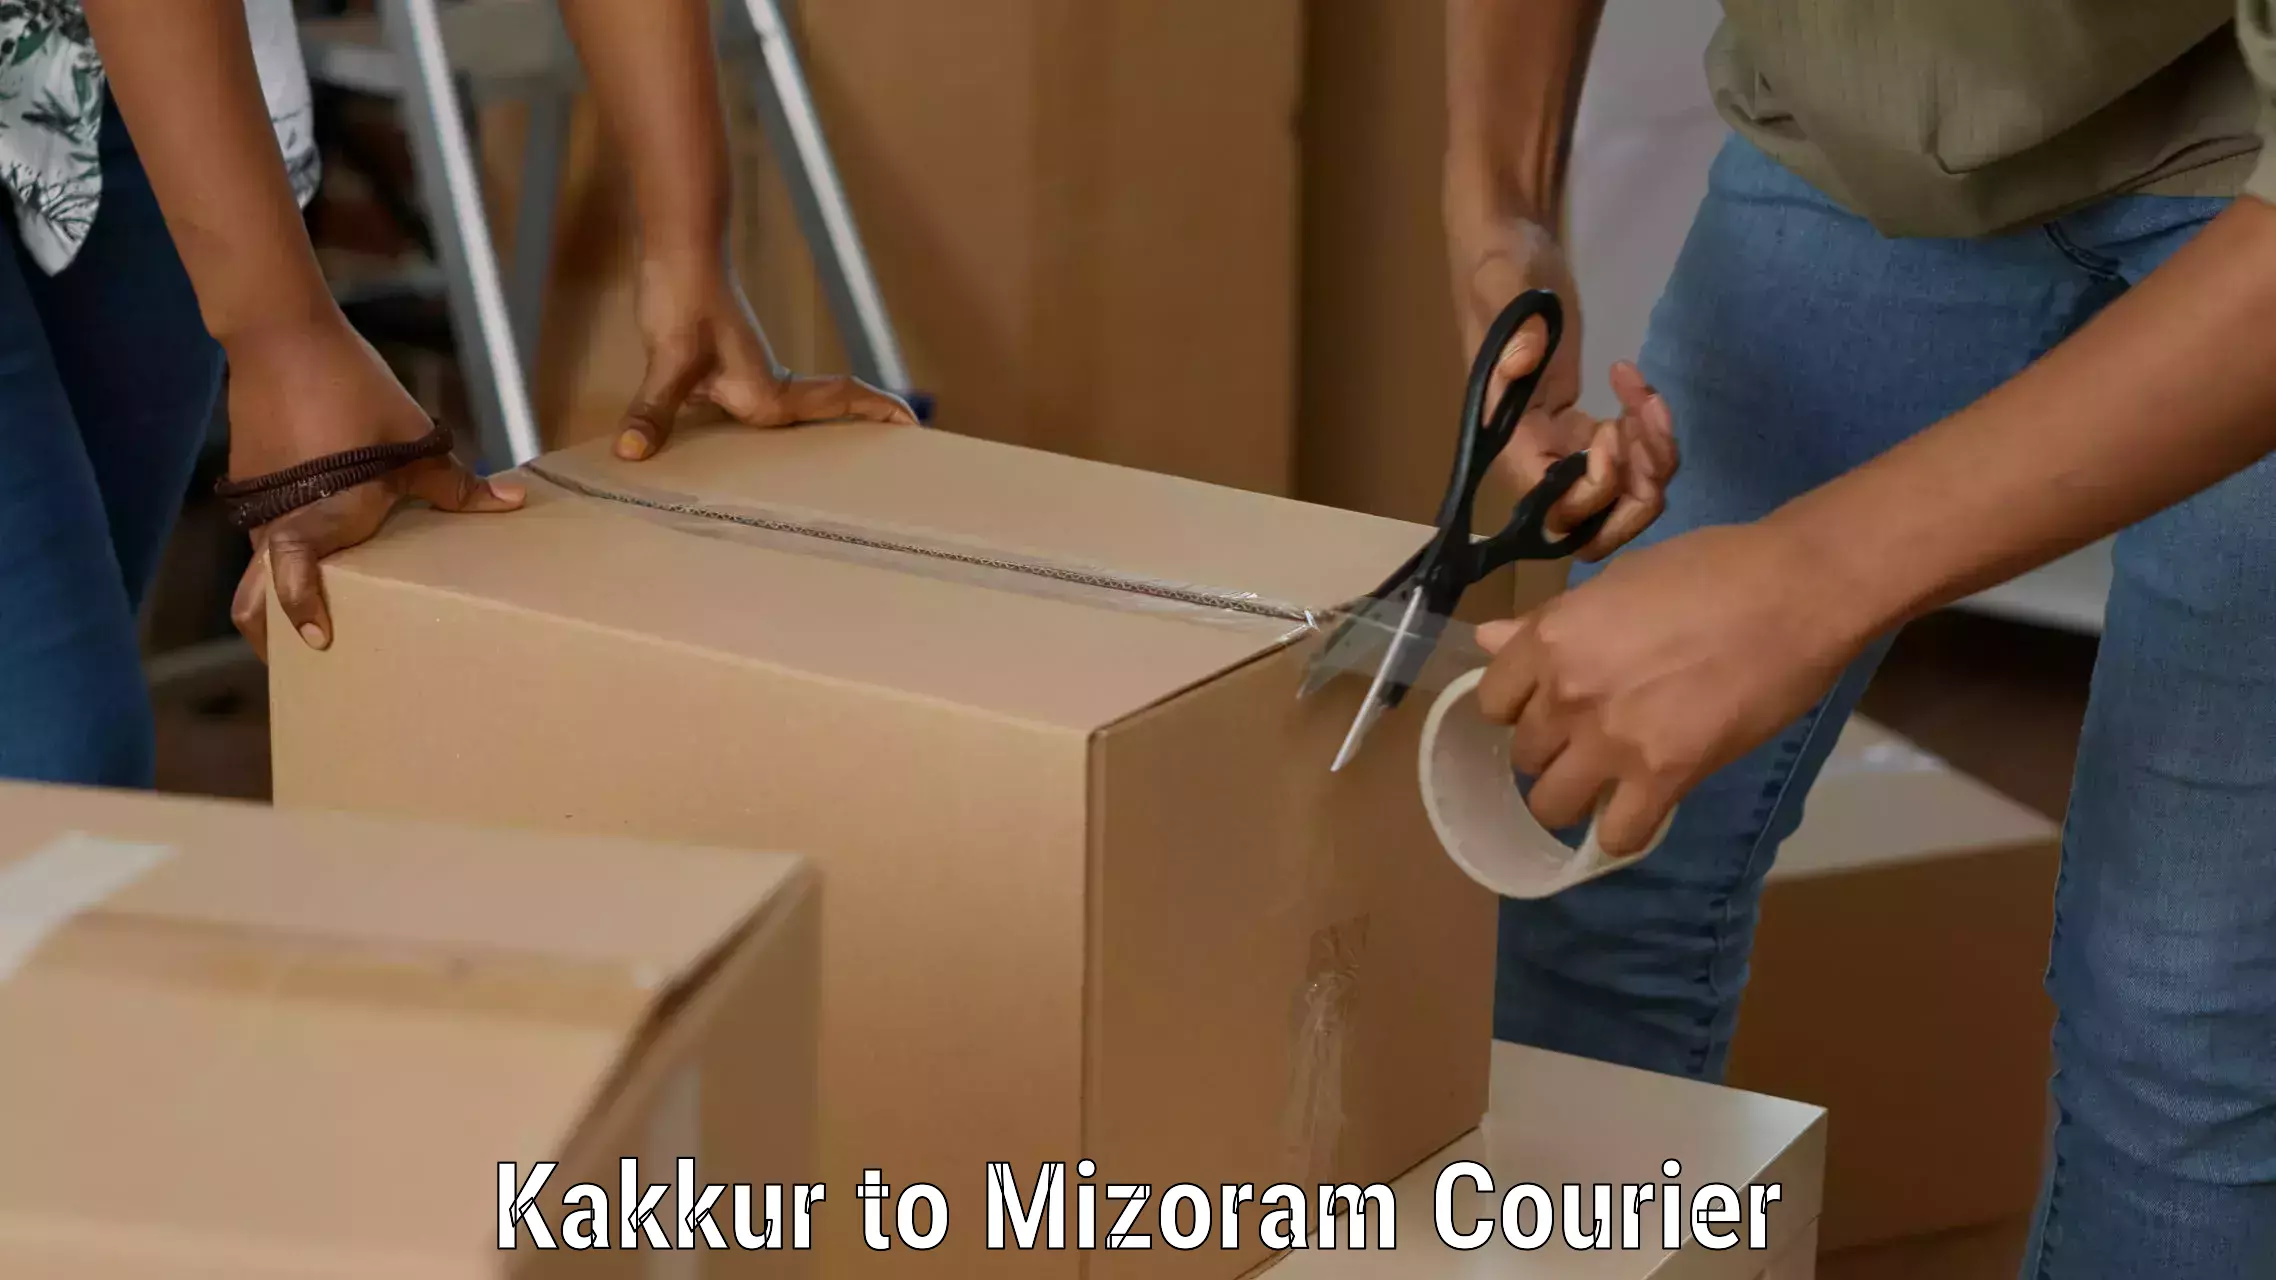 Efficient shipping platforms Kakkur to Mizoram